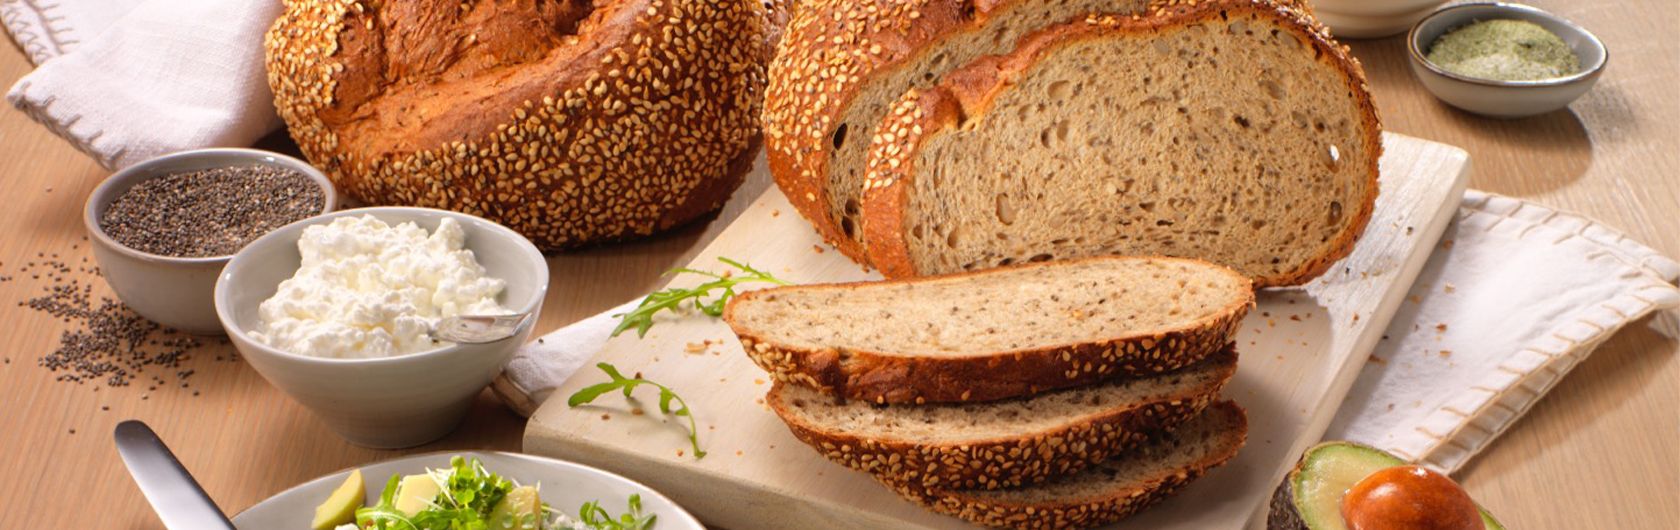 Für Brot- und Brötchen-Ideen